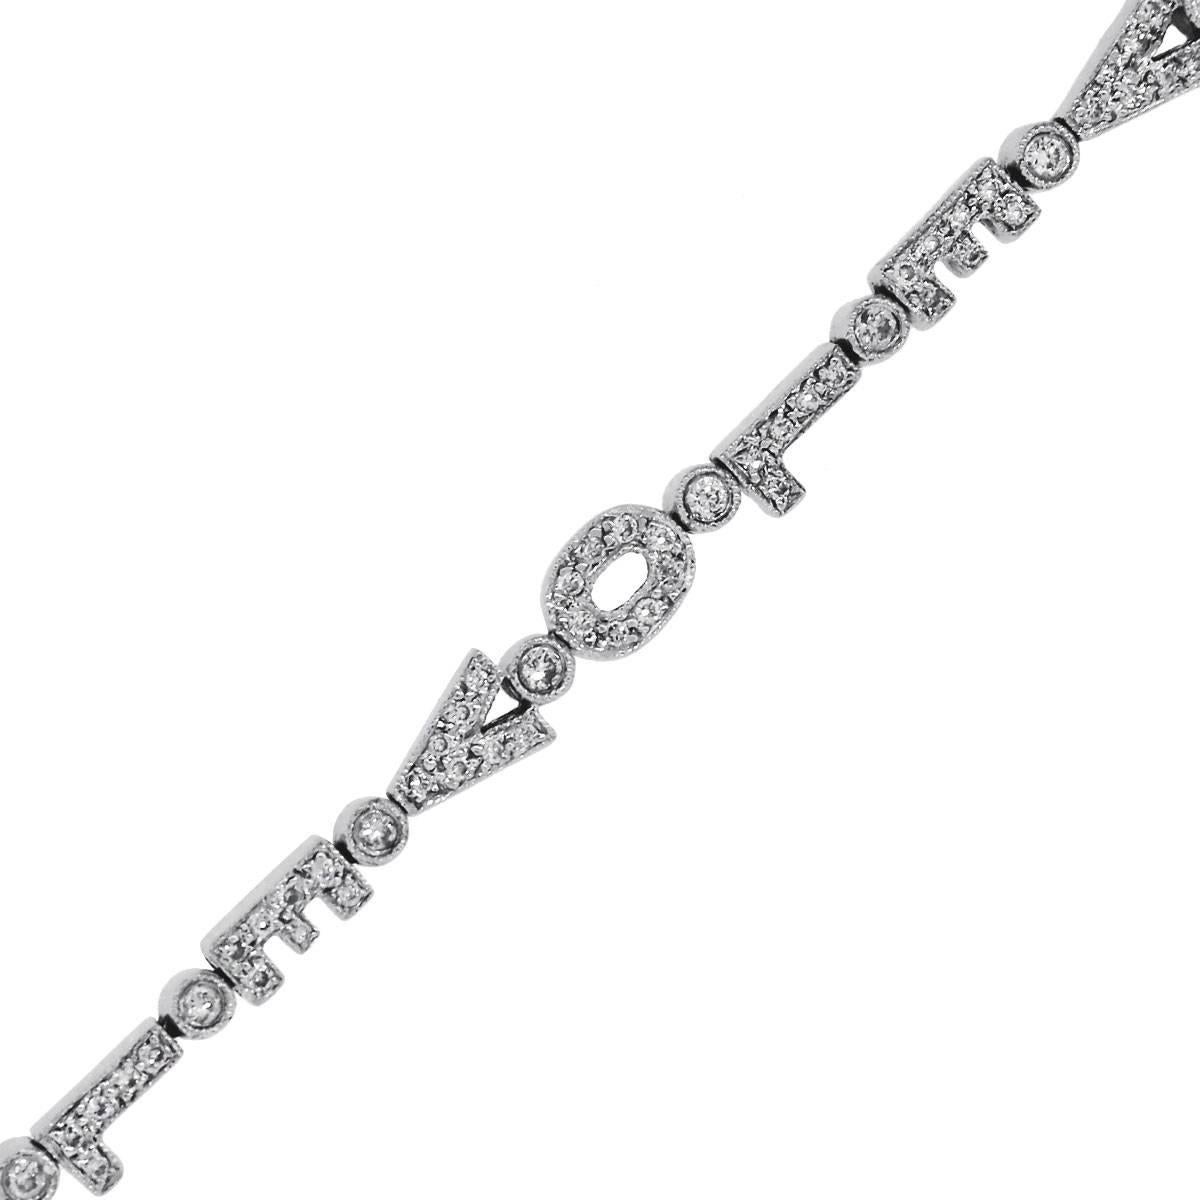 1.50 Carat Diamond “Love” Bracelet